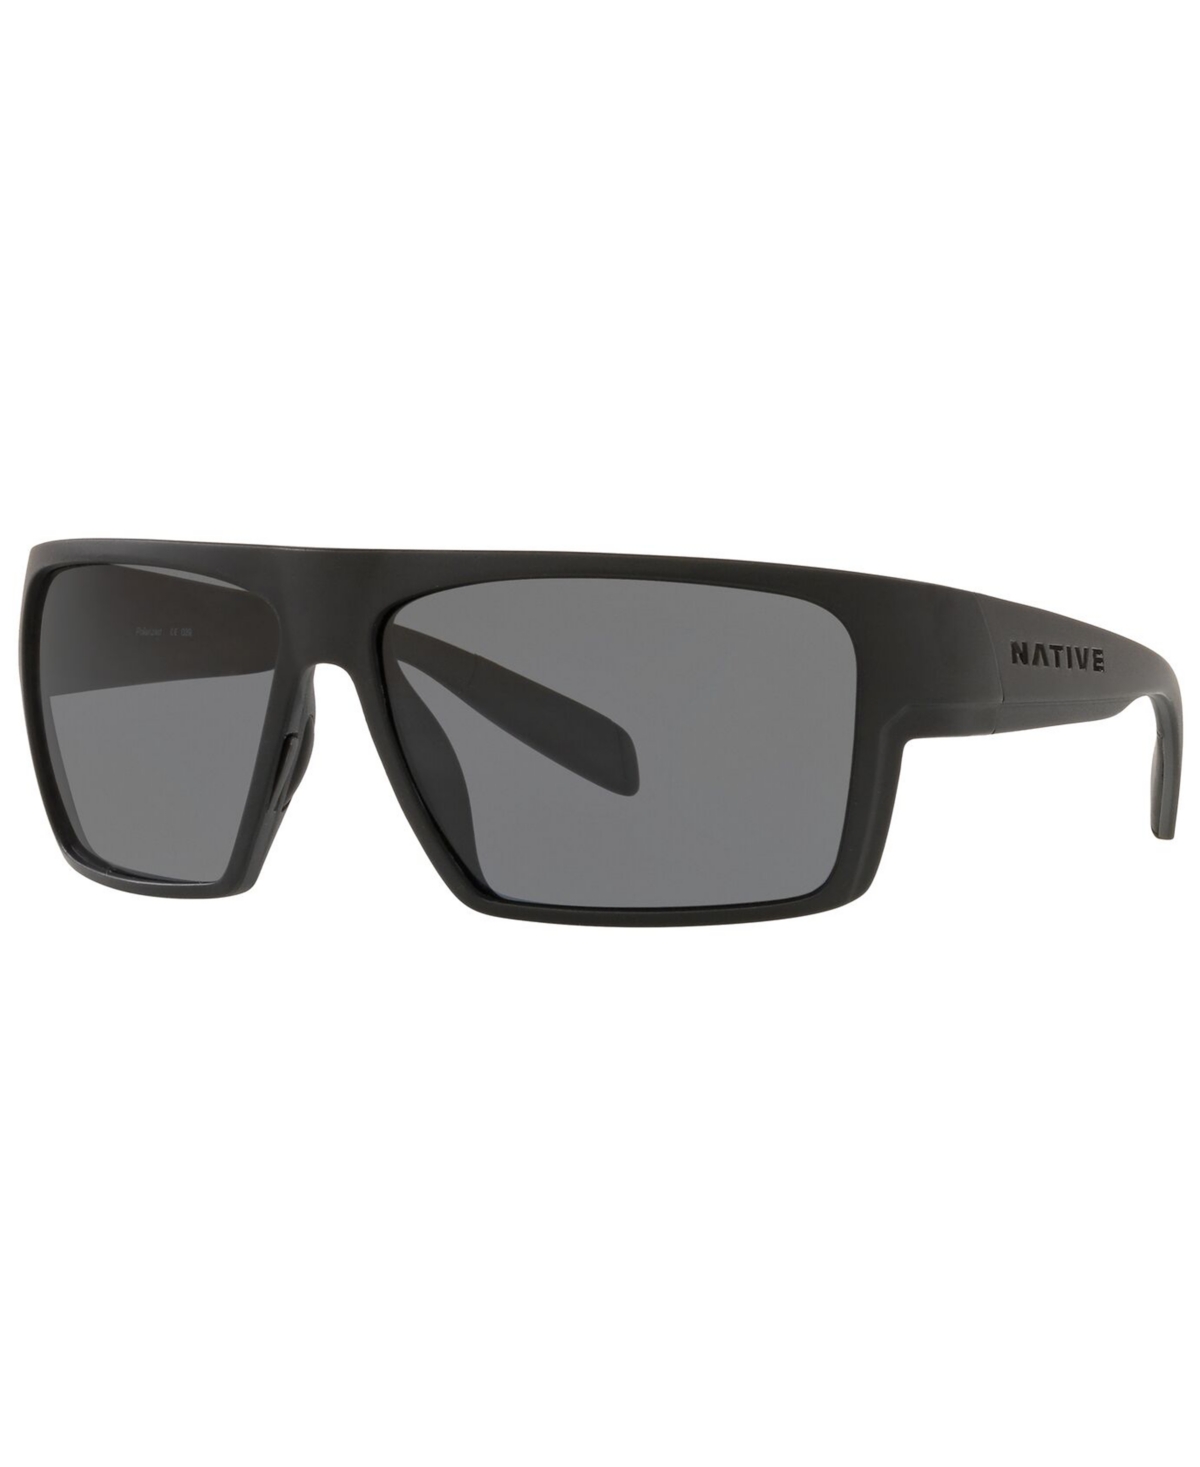 Native Men's Polarized Sunglasses, XD9010 62 - BLACK/LIME GREEN/BLACK/GREY